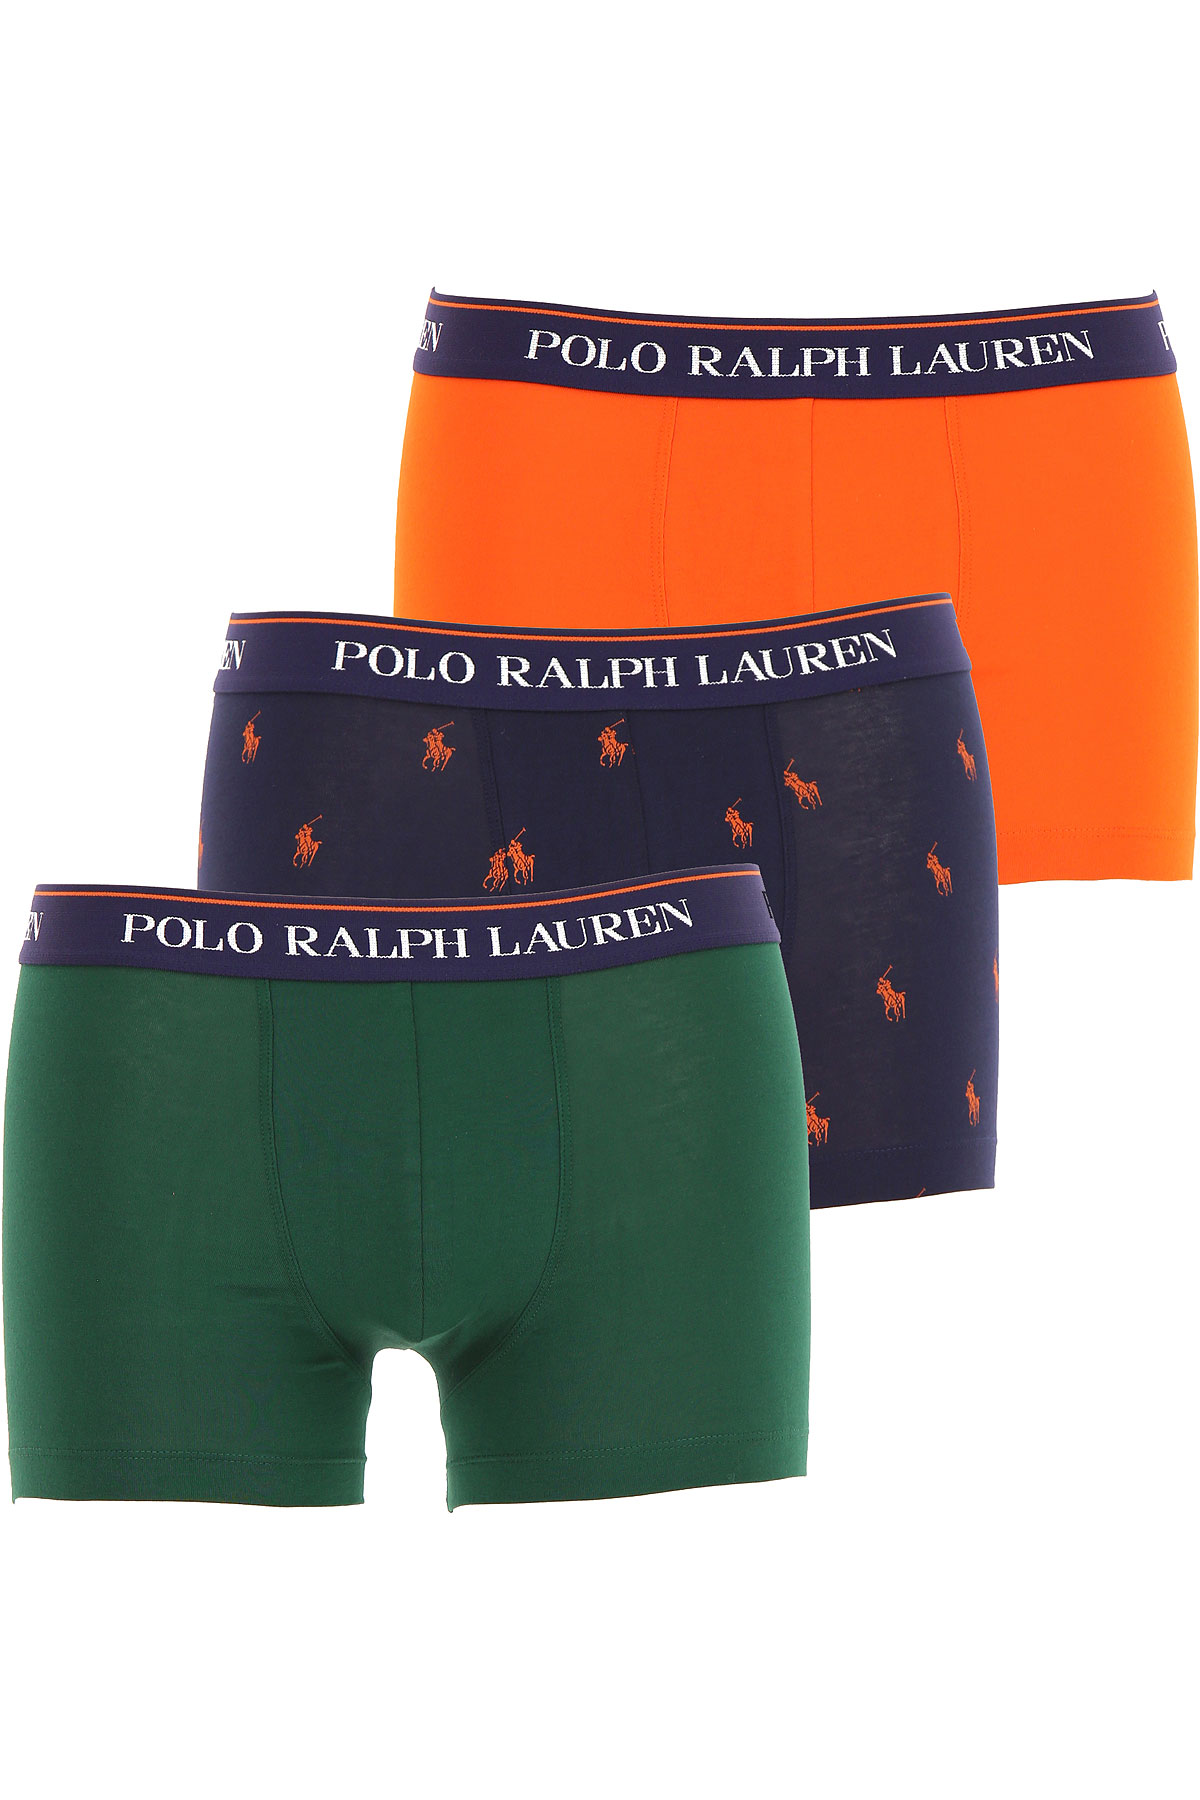 Ralph Lauren Boxer Shorts für Herren, Unterhose, Short, Boxer Günstig im Sale, 3 Pack, Waldgrün, Baumwolle, 2017, L M XL